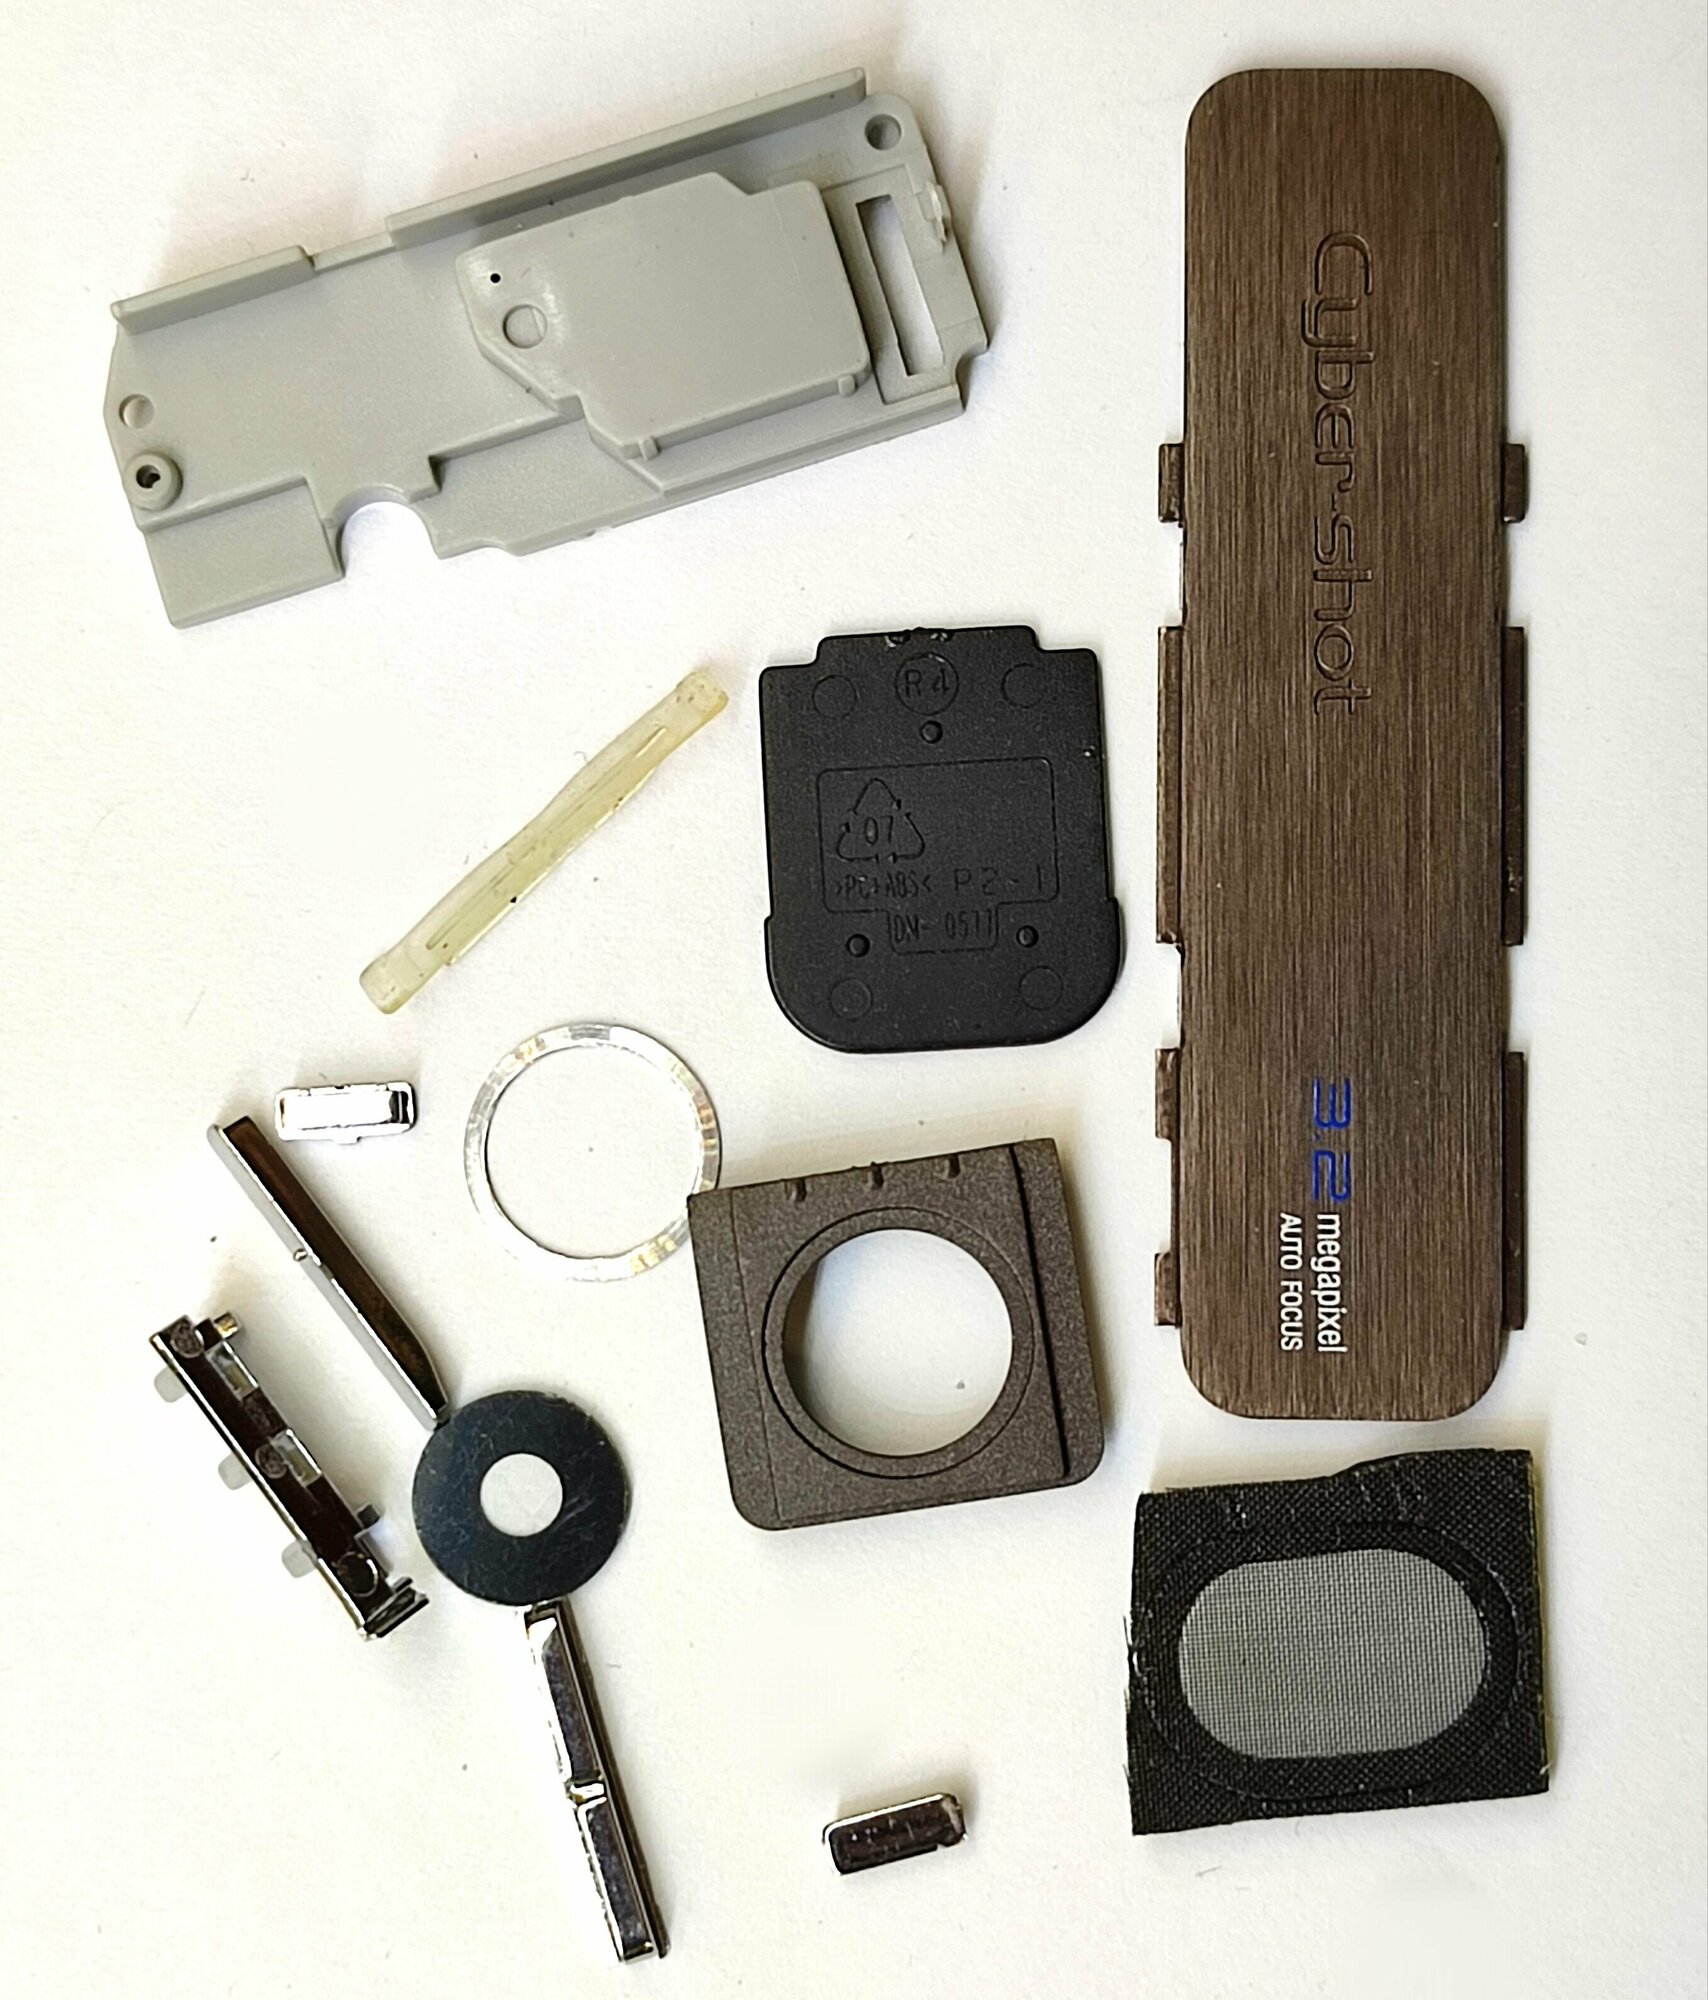 Комплект боковых кнопок. Толкатель кнопки включения громкости  для телефона Sony Ericsson k770i (кнопки часть корпуса) + стекло камеры